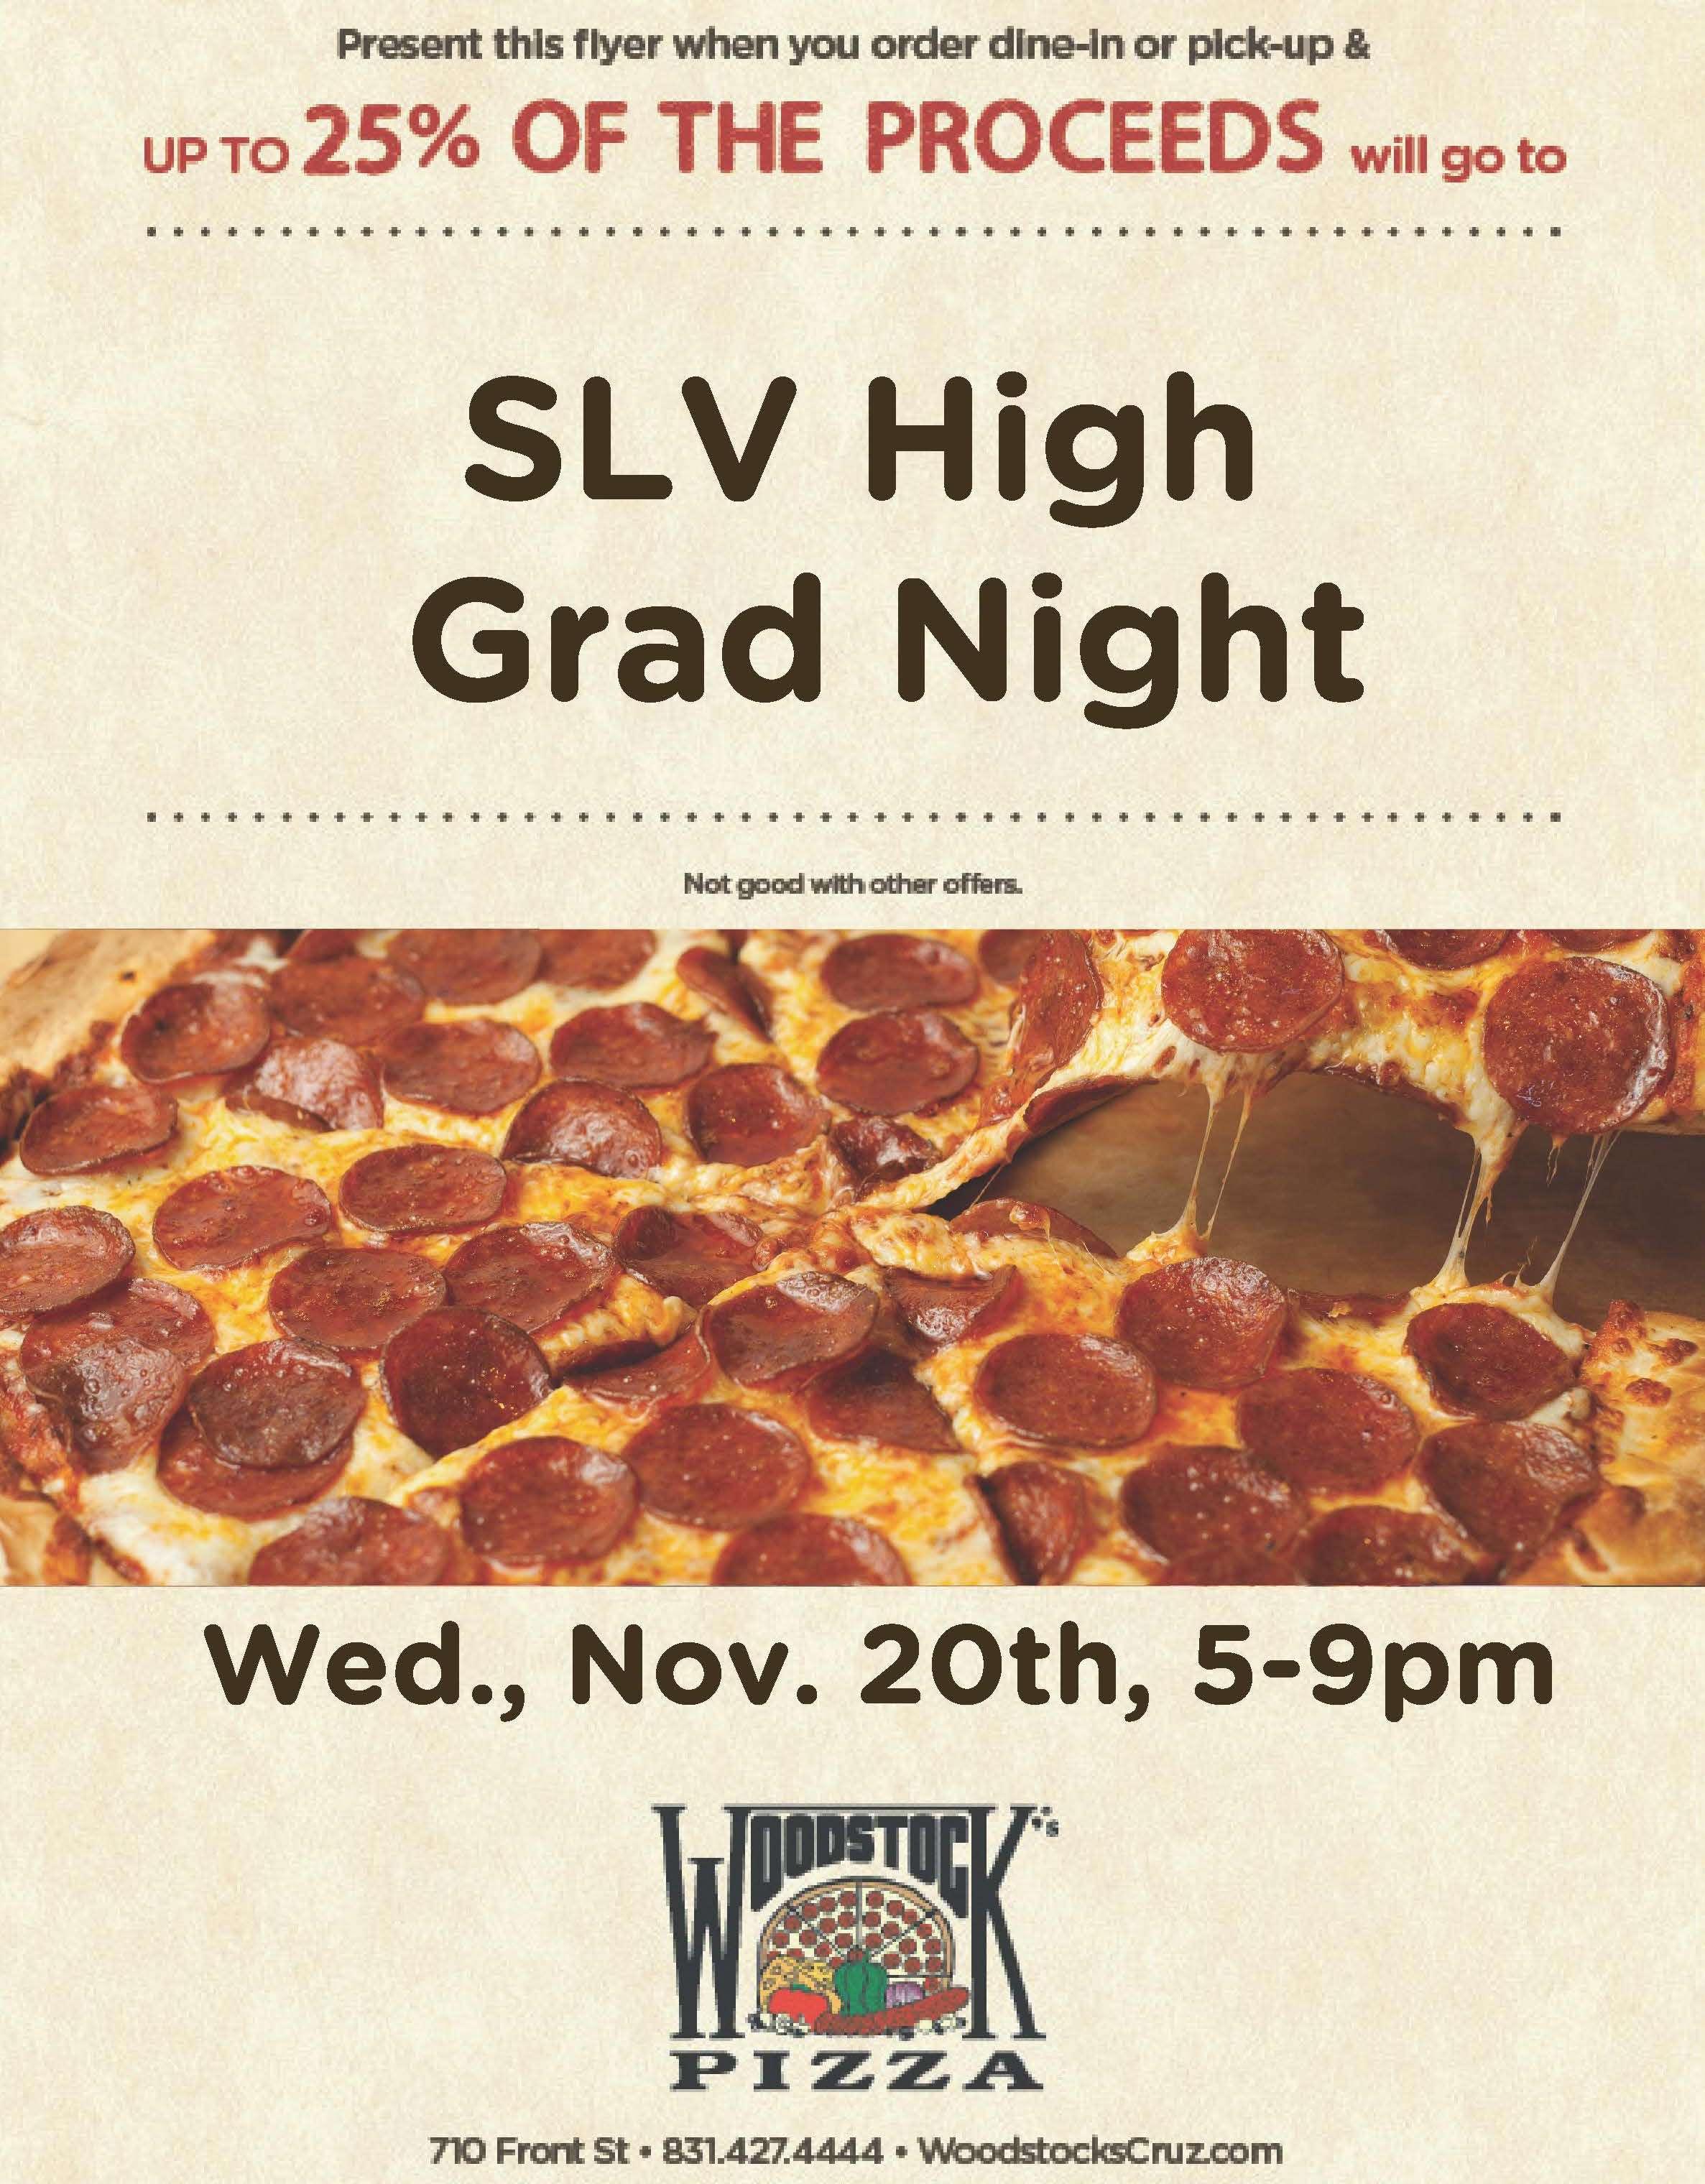 Grad Night fundraiser at Woodstock Pizza Nov. 20th 5-9pm